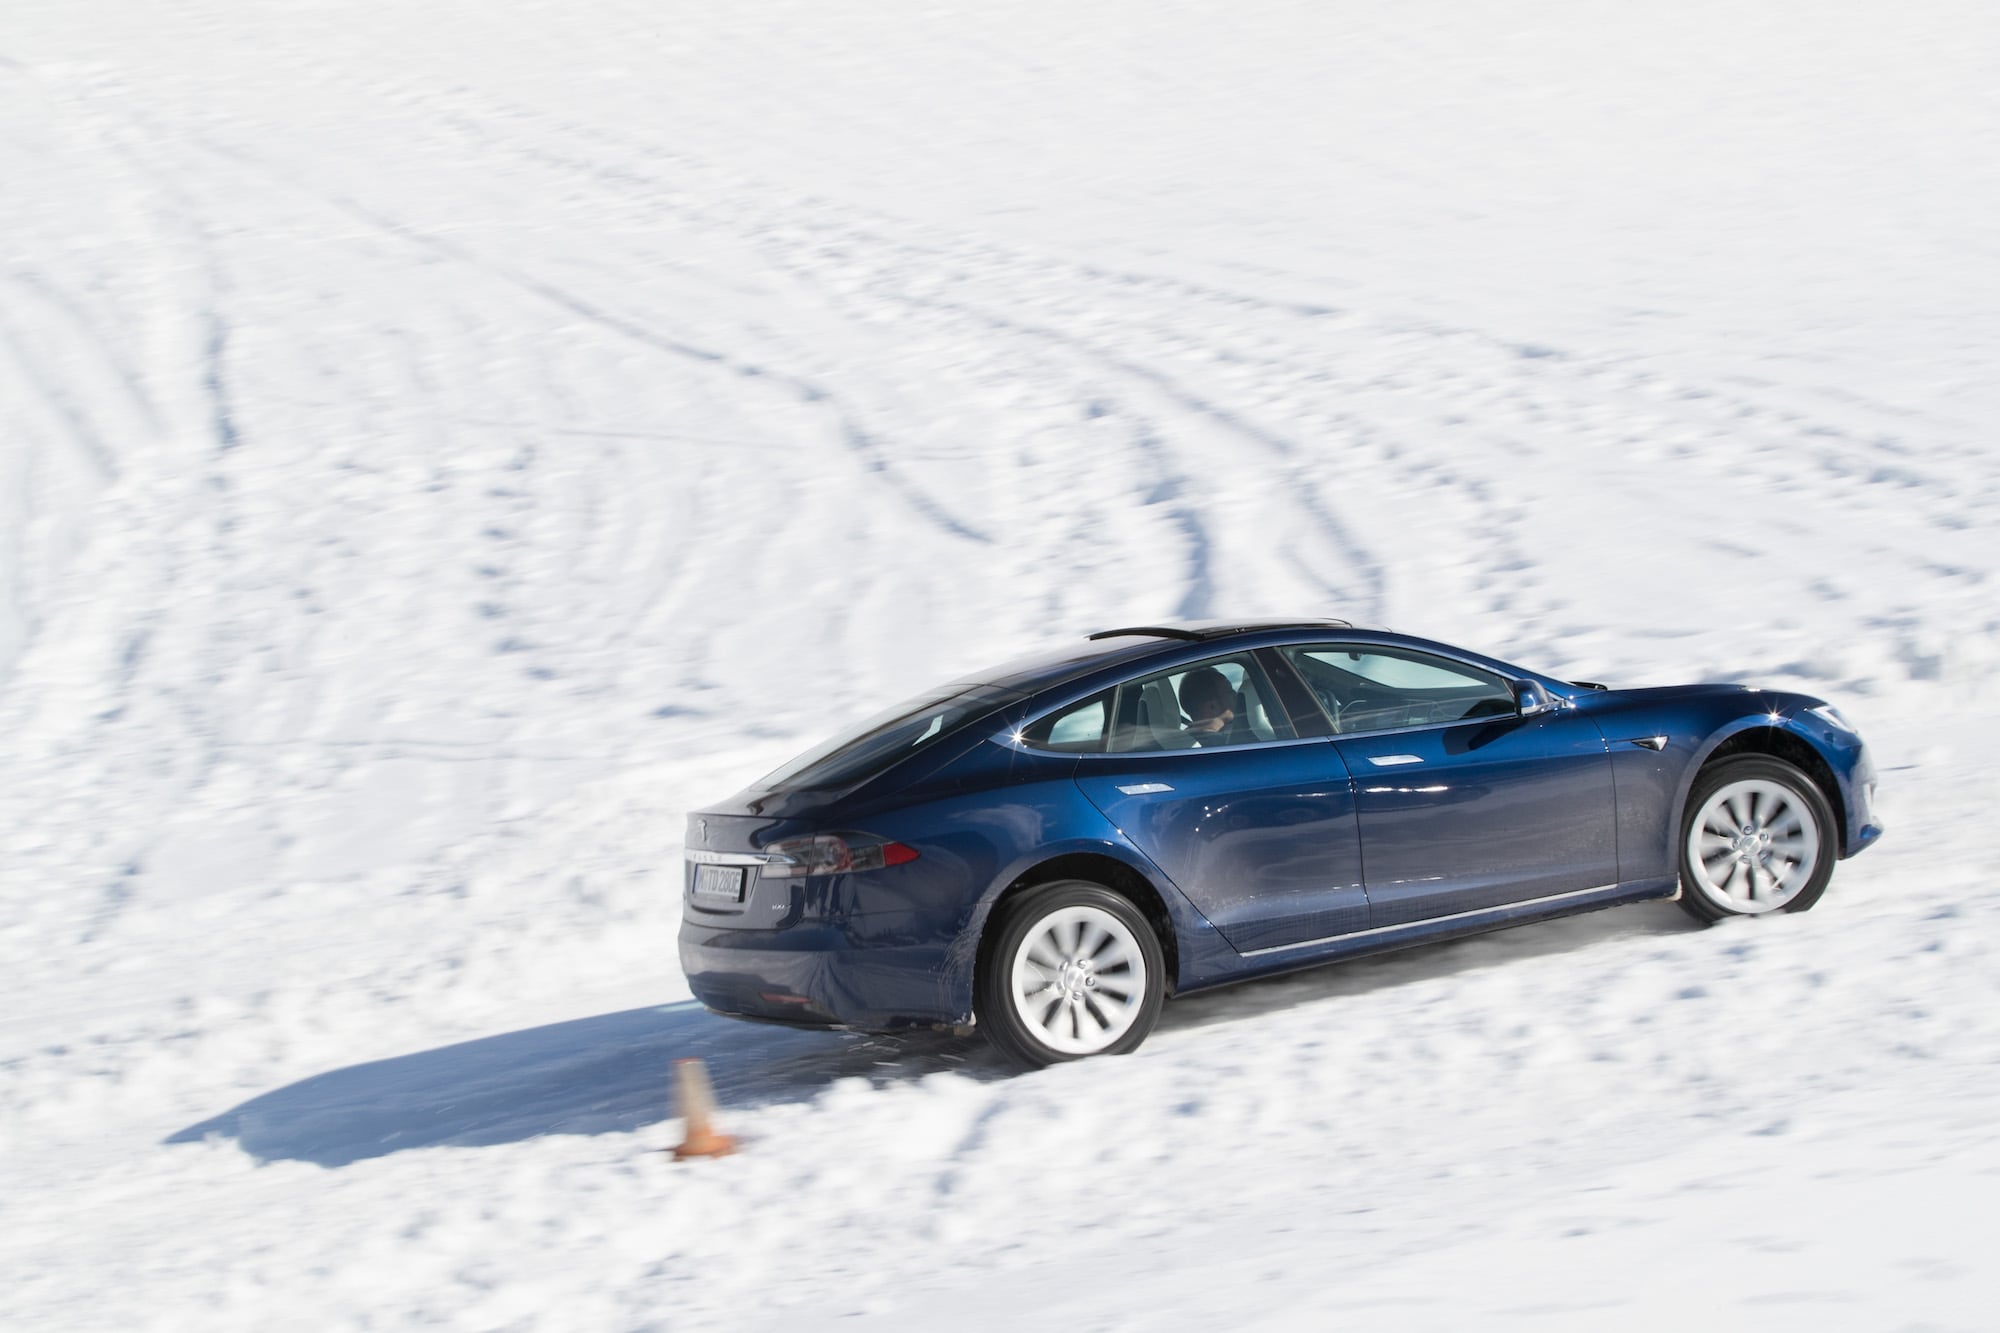 Härteprobe unter winterlichen Bedingungen: Die Tesla Winter Driving Experience 5